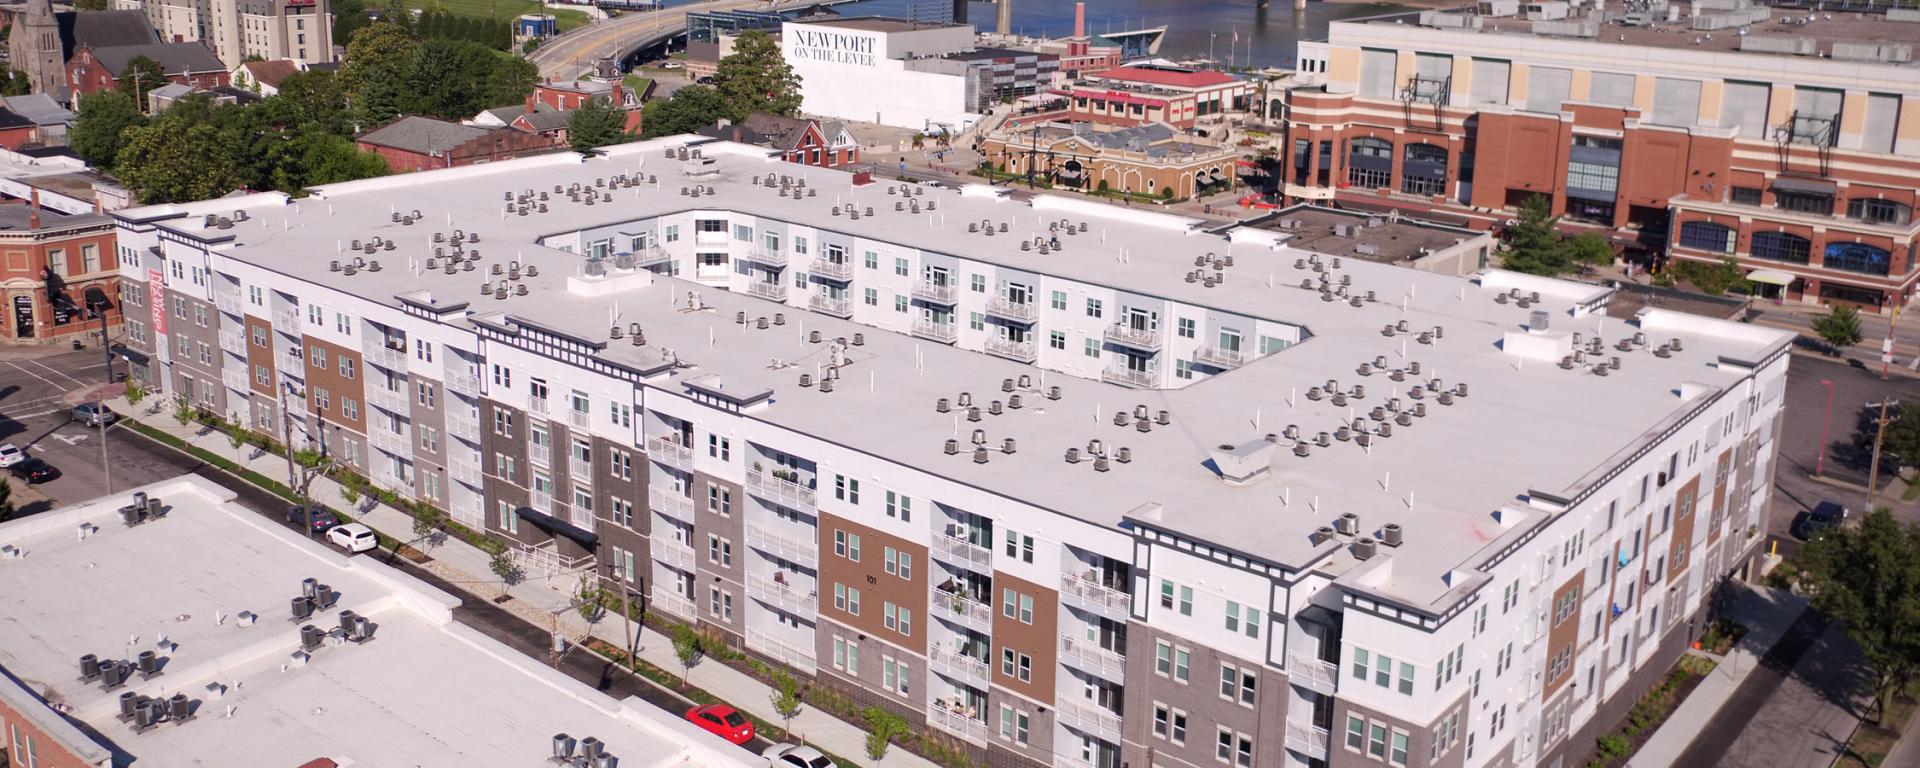 aerial photo of apartment building